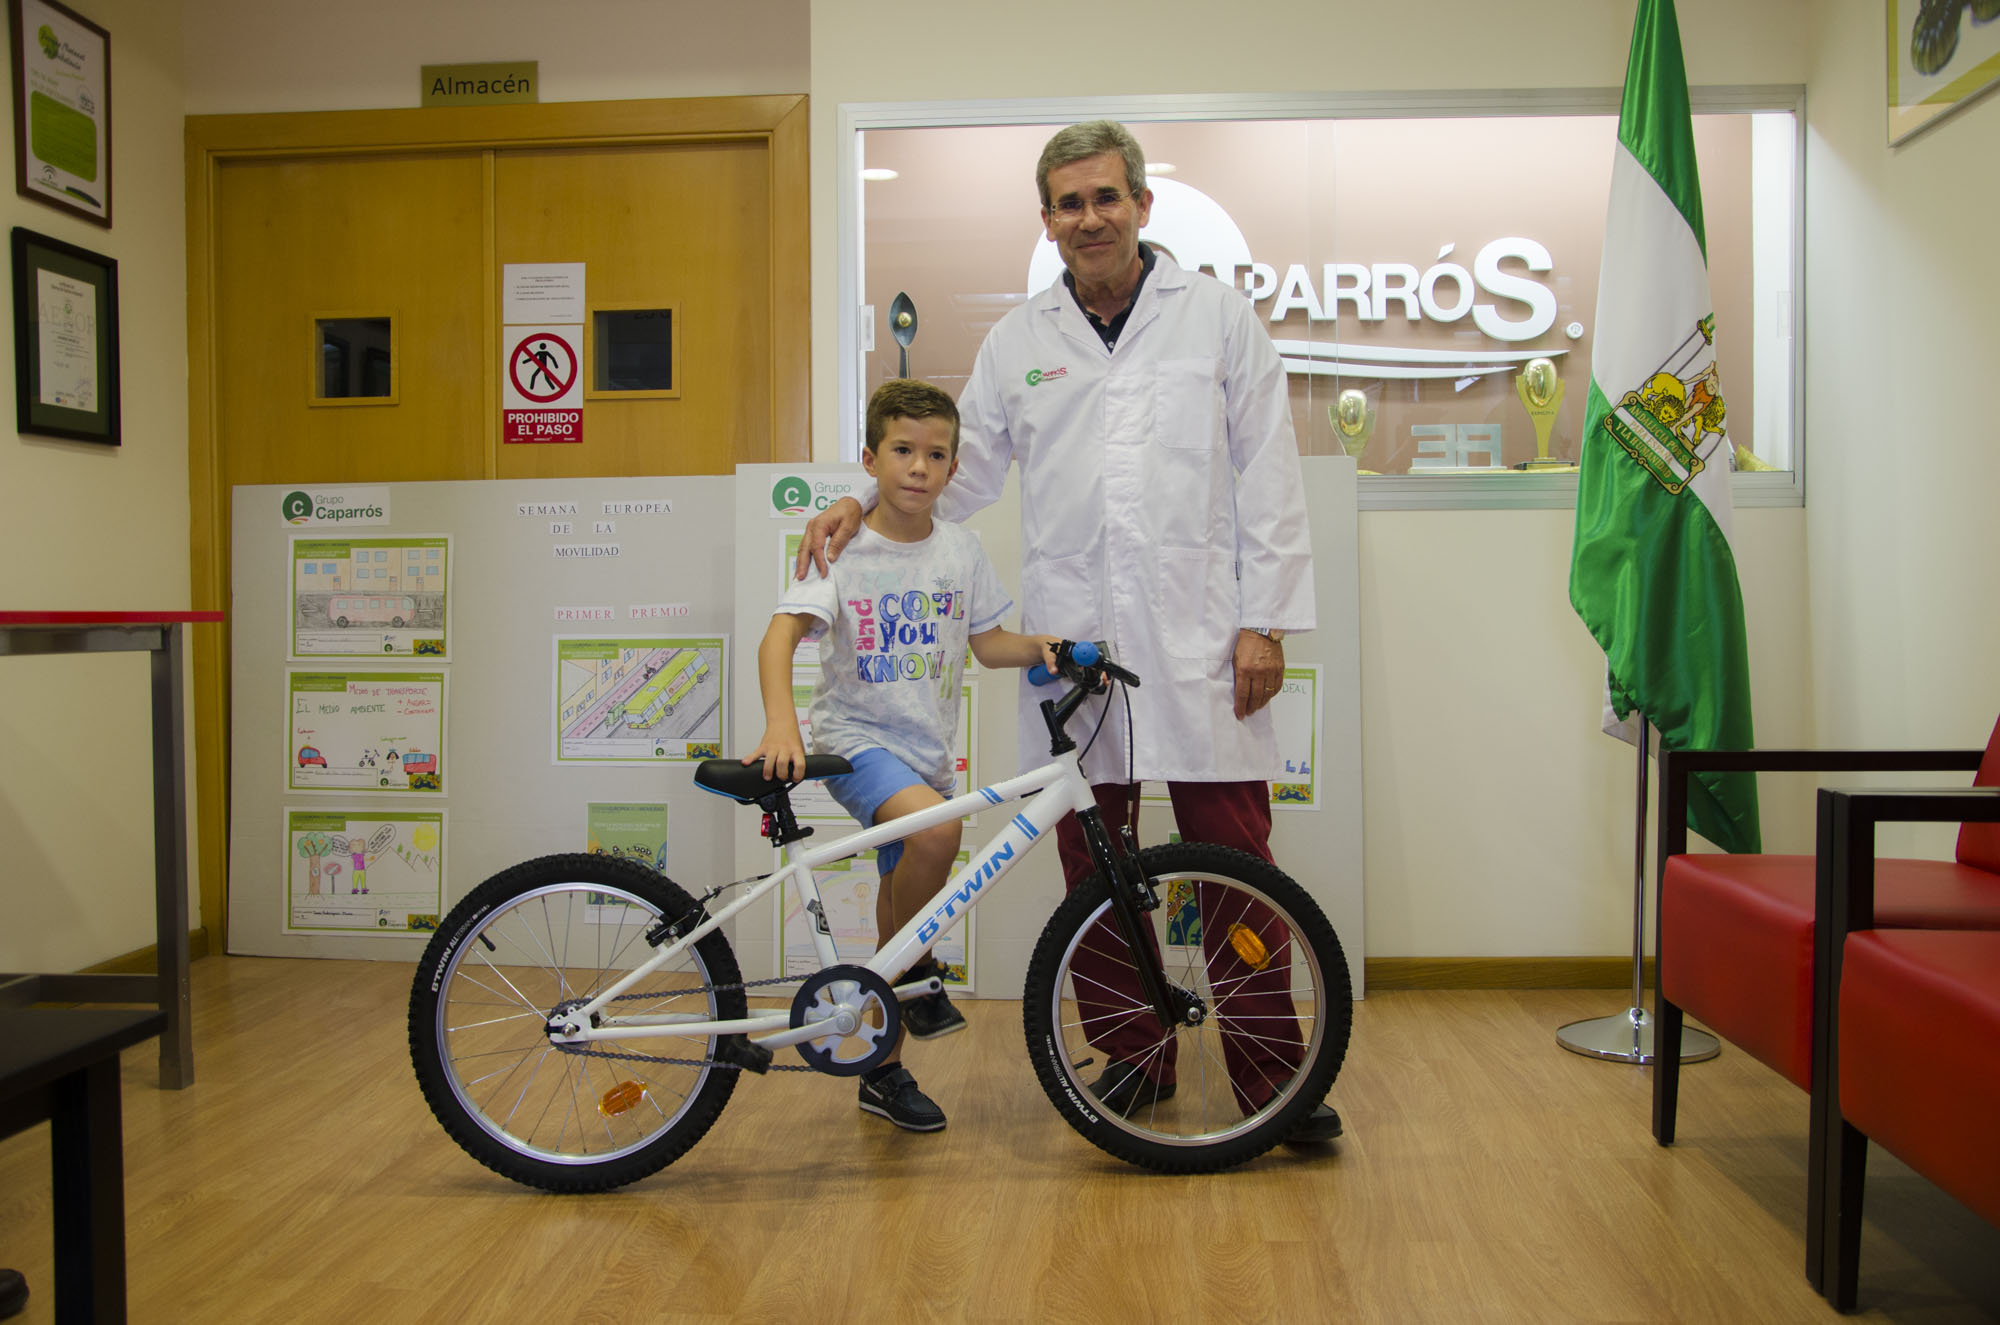 Entrega de bicicleta a los niños ganadores del concurso de dibujo